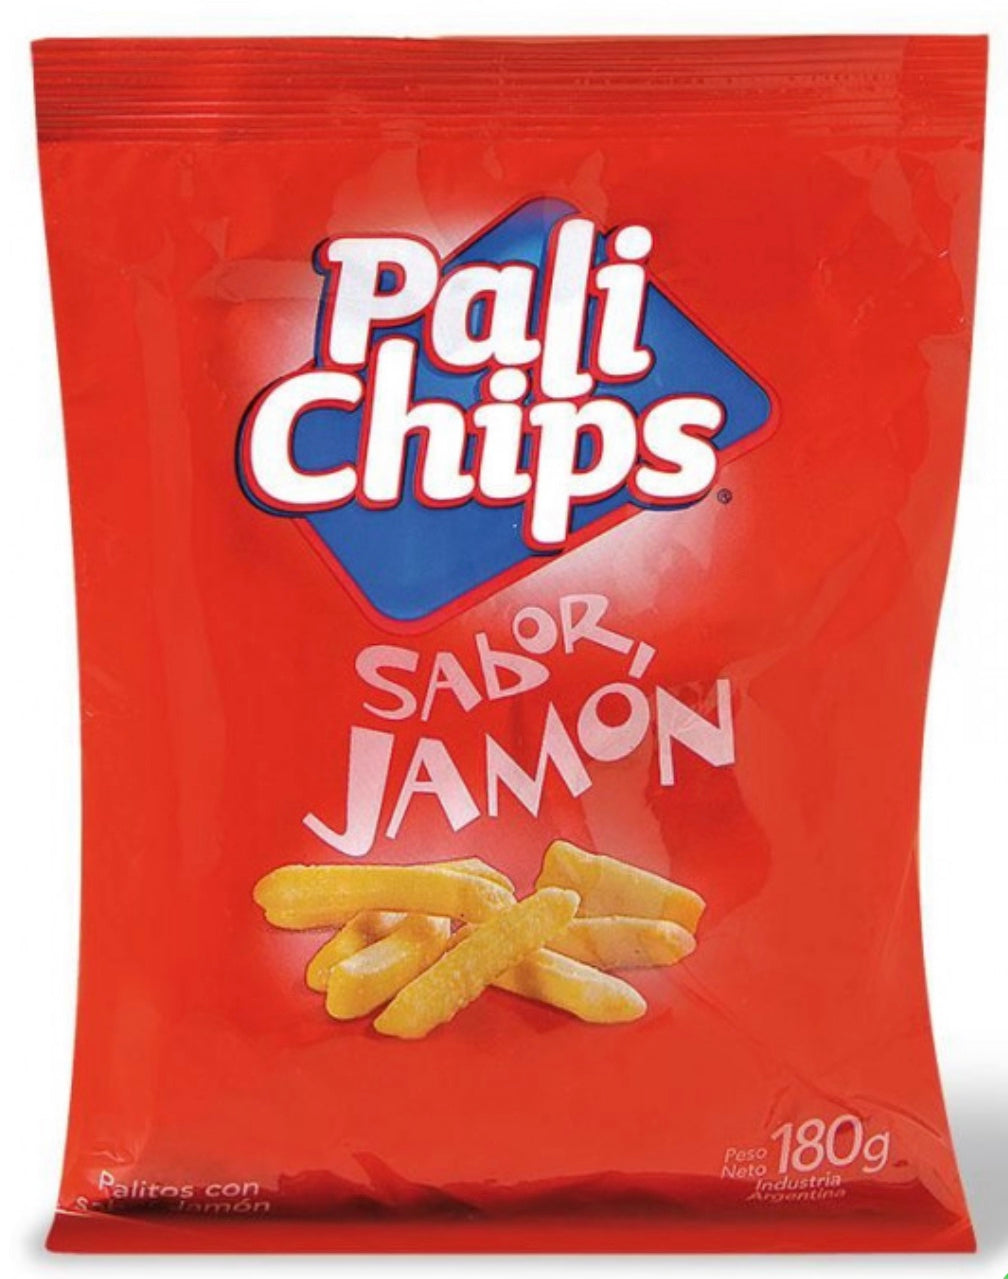 PALI CHIPS SABOR JAMÓN 160g